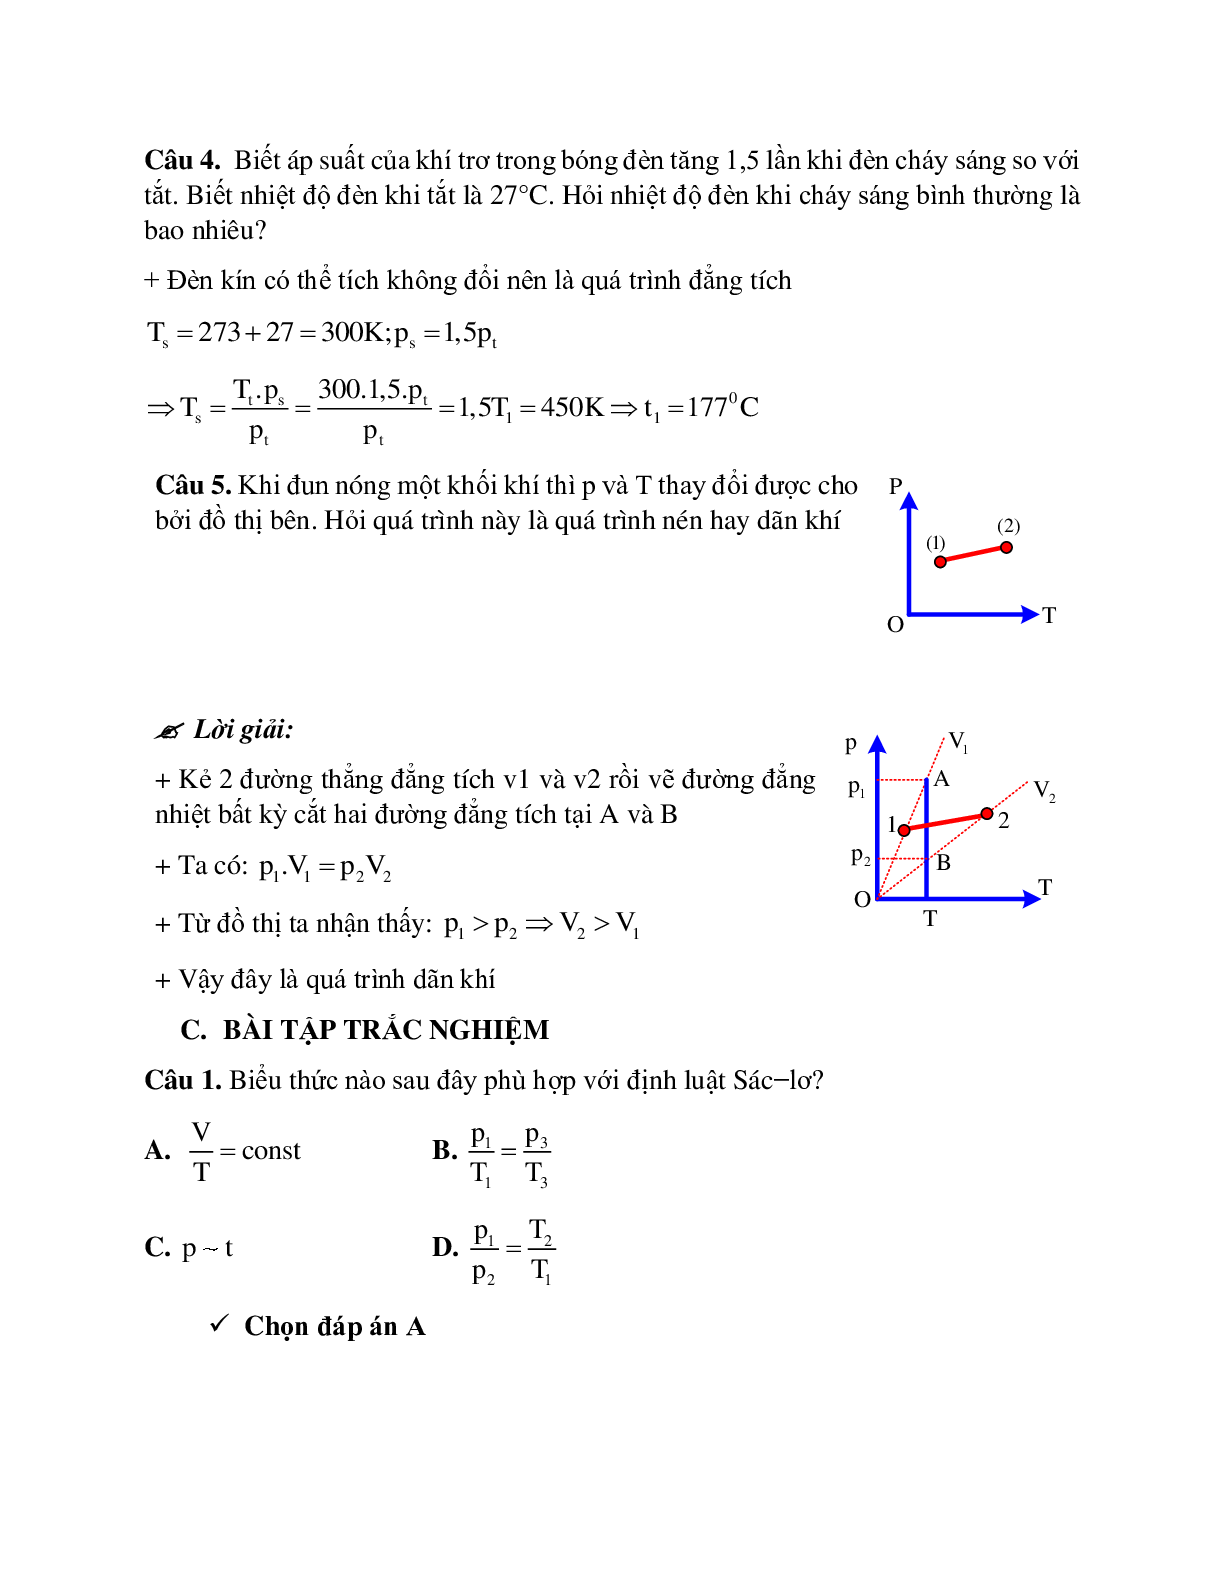 Bài tập về quá trình đẳng tích - Định luật sác - lơ có đáp án (trang 4)